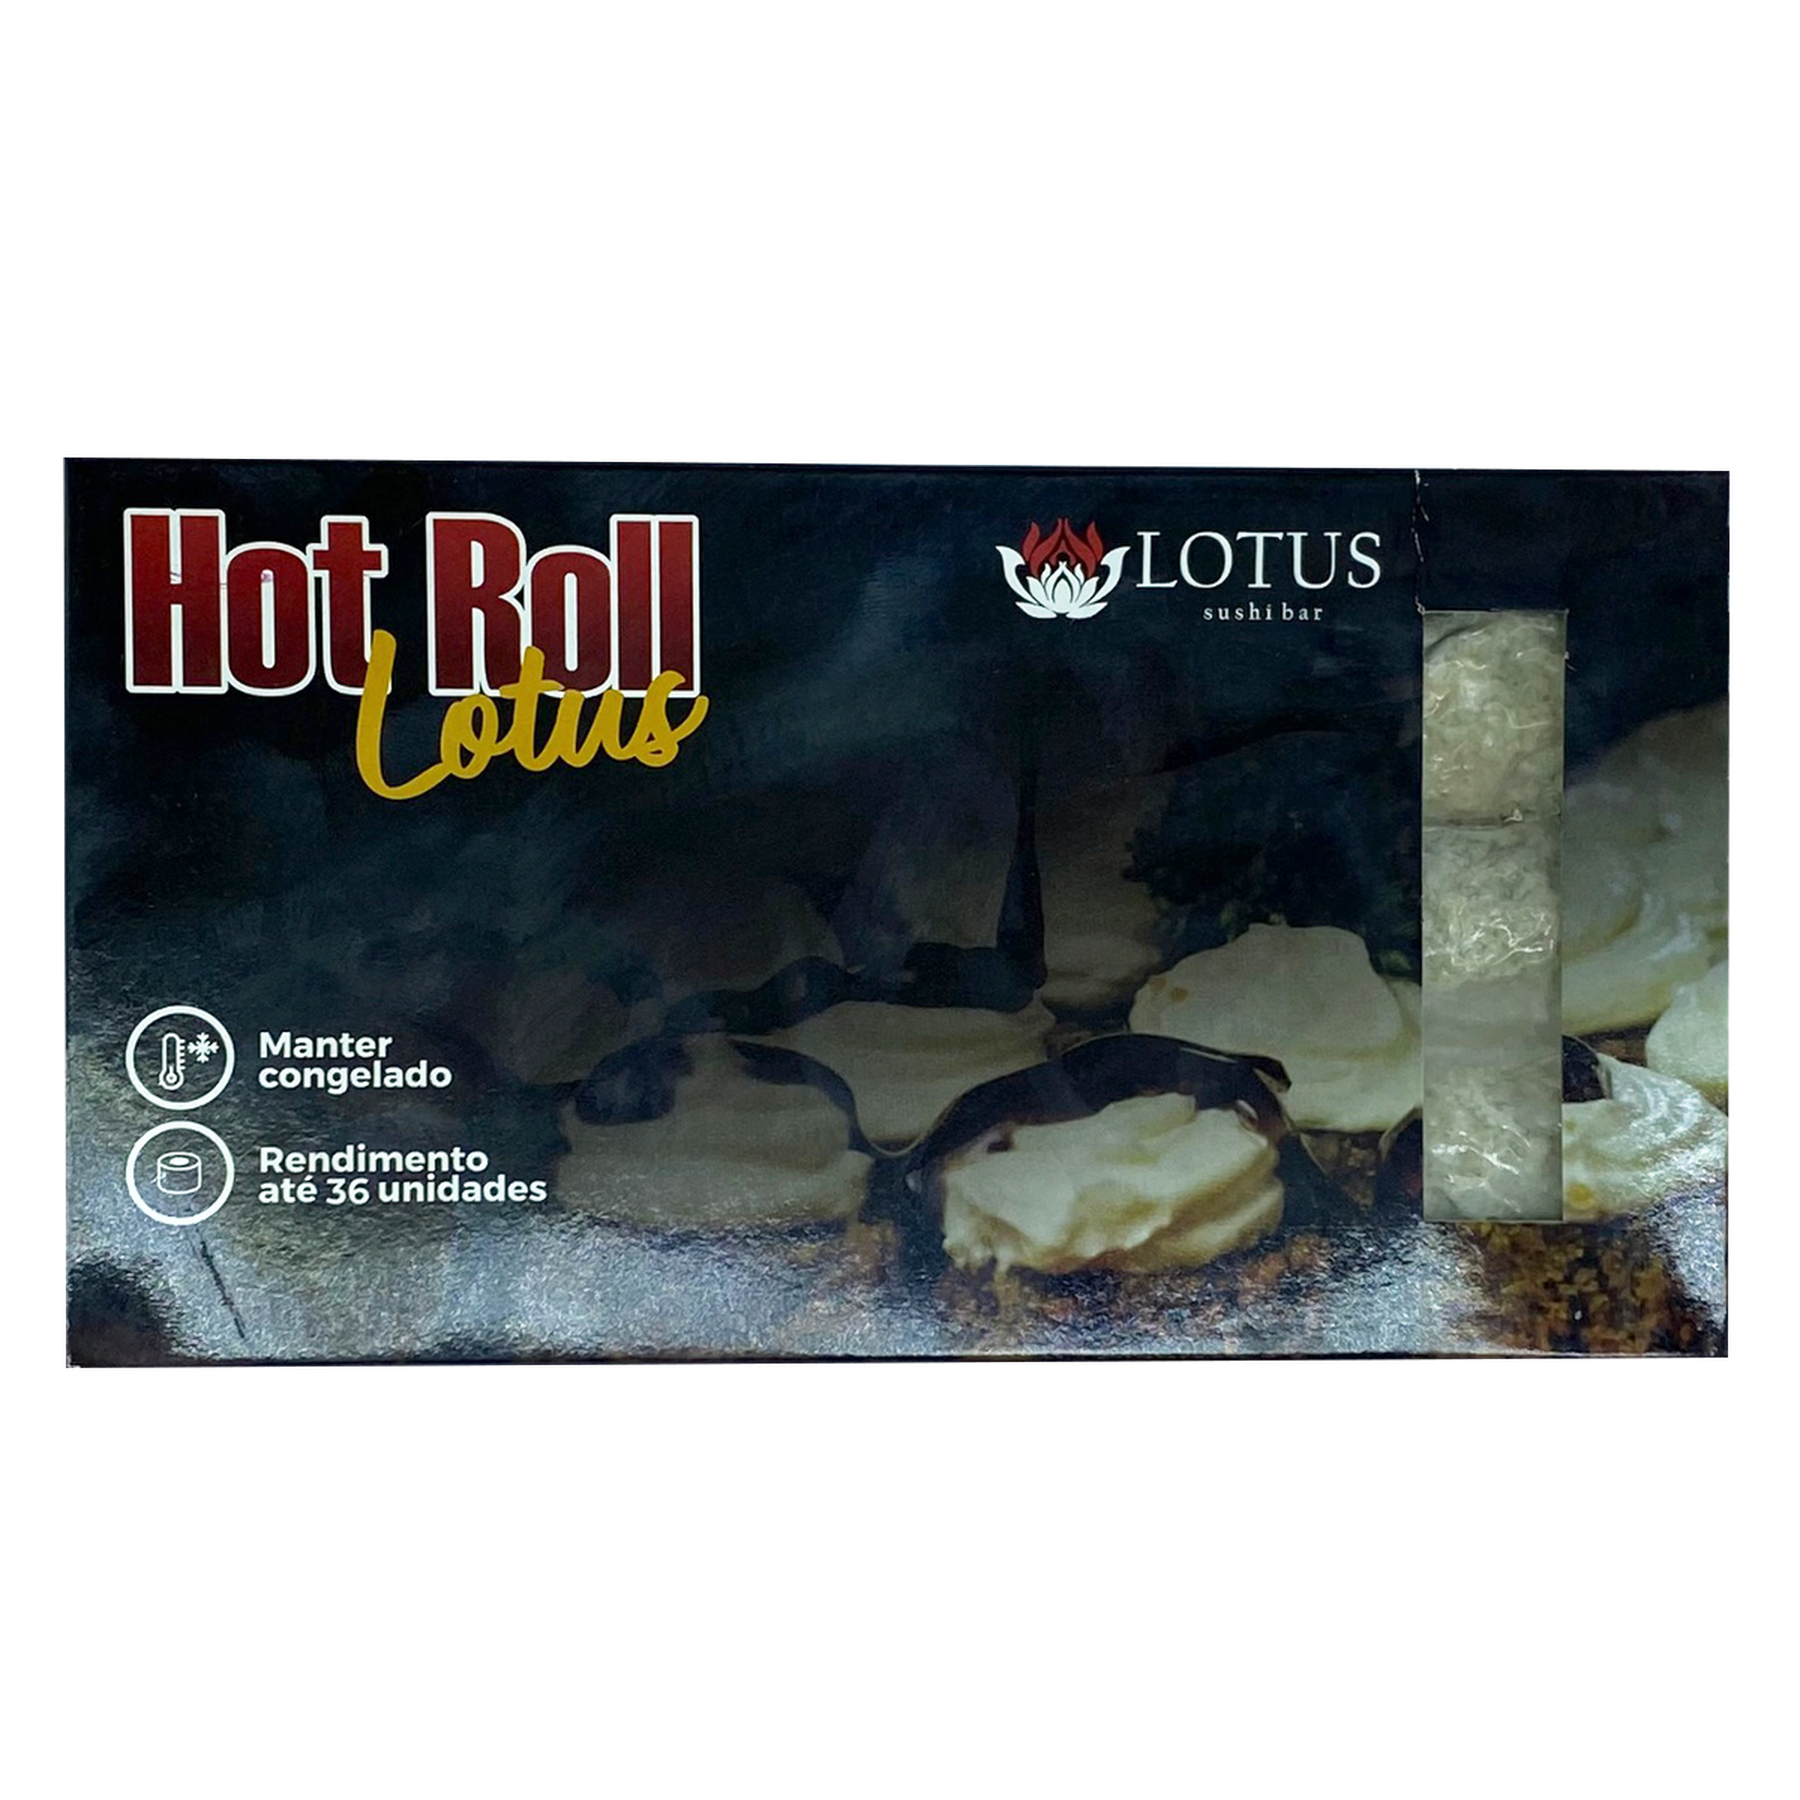 Hot Roll Lotus Caixa 390g